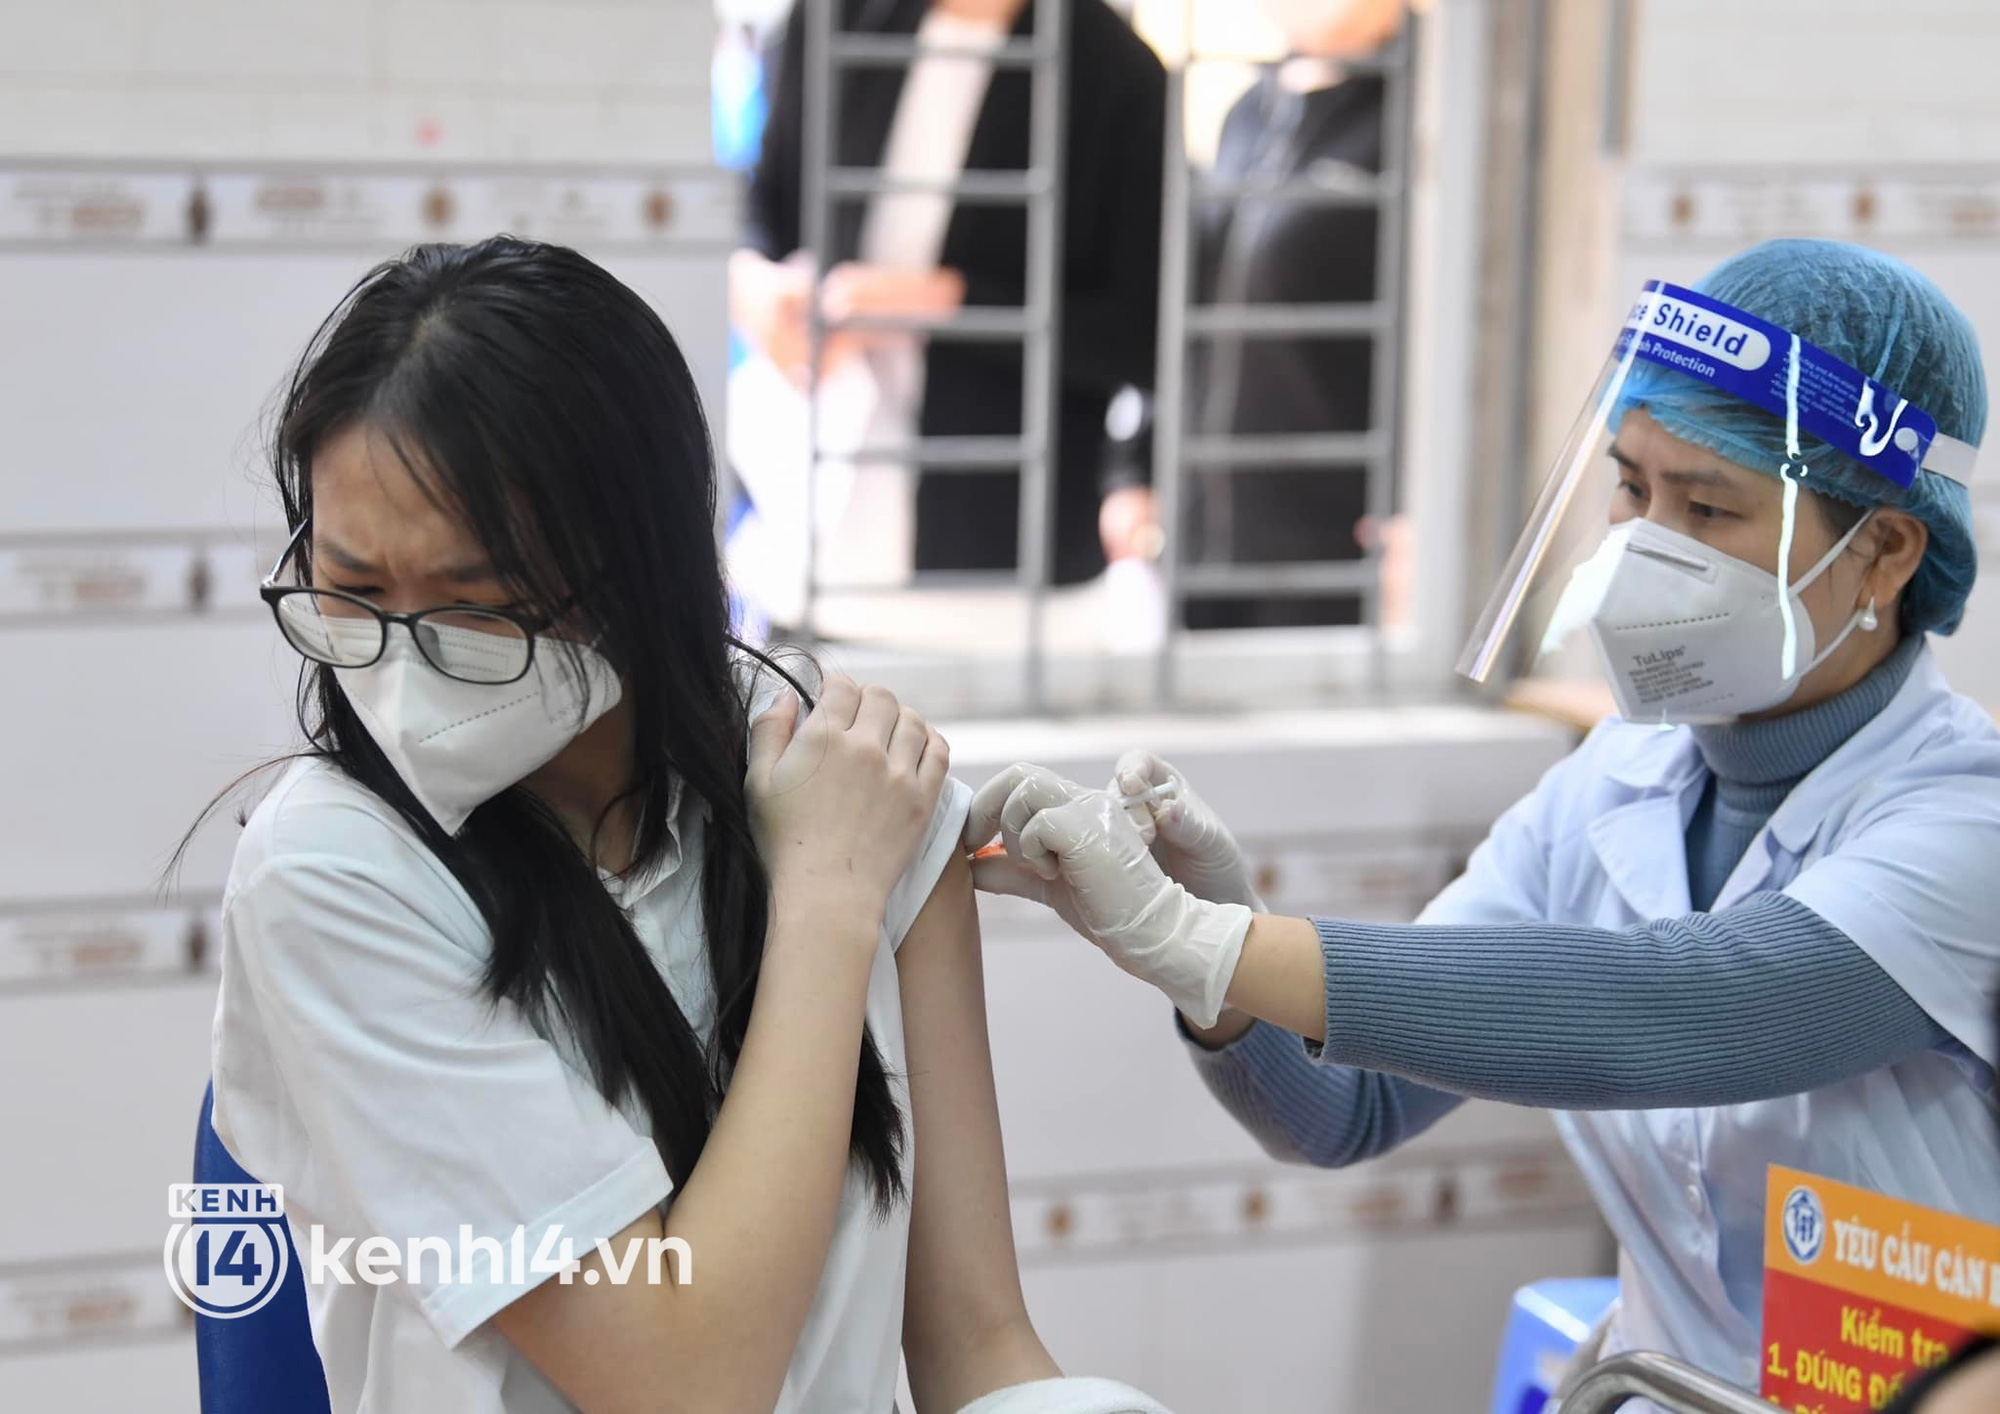 17 học sinh Thanh Hóa phản ứng nặng sau tiêm vaccine Covid-19, tạm dừng tiêm 2 lô vaccine gia hạn - Ảnh 1.